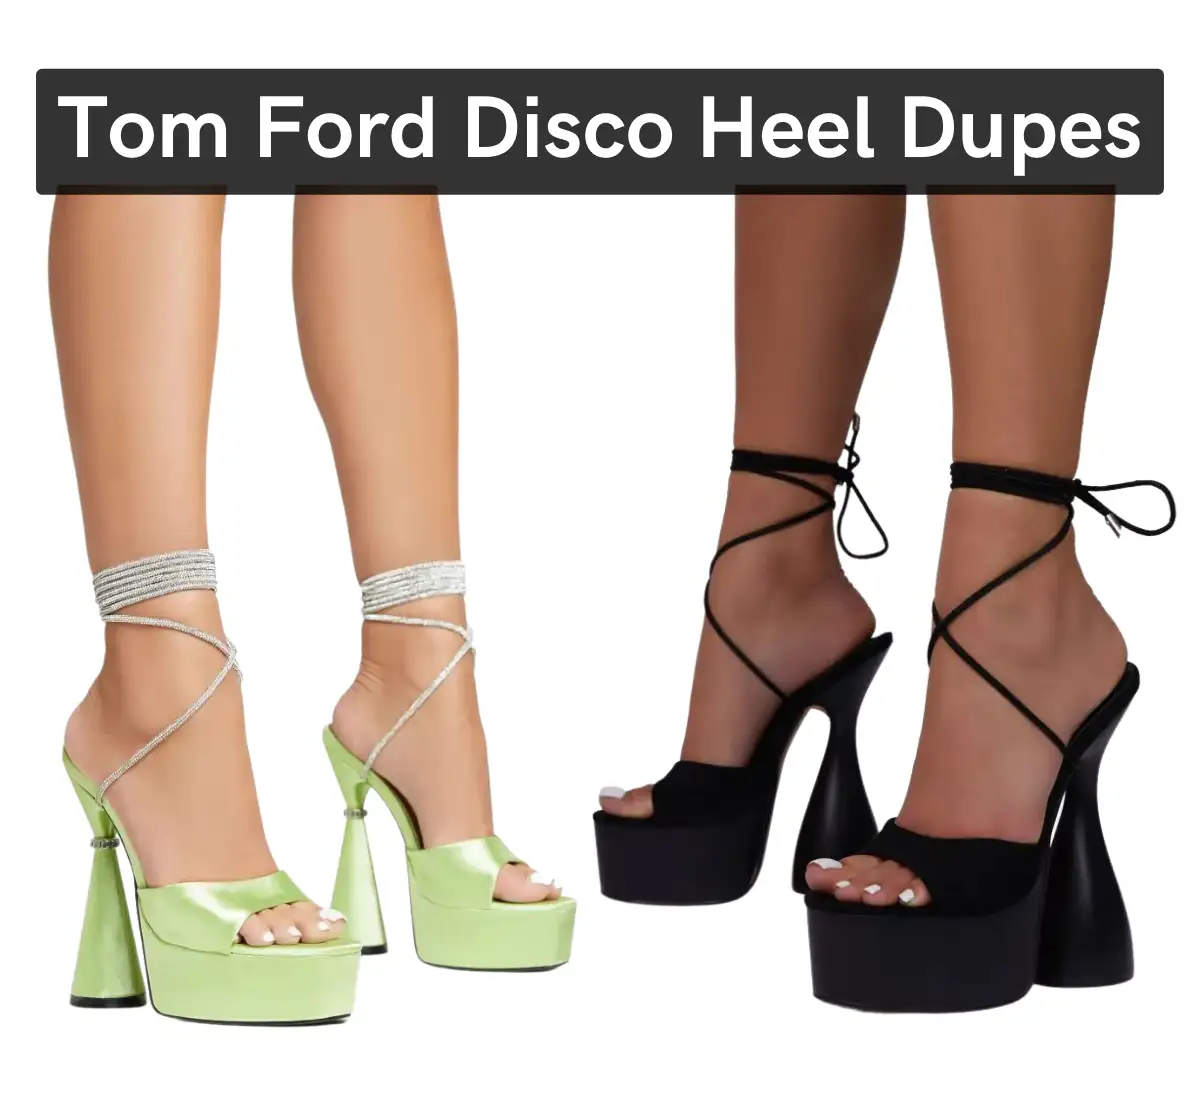 Tom ford disco heels dupes womensmight. Com